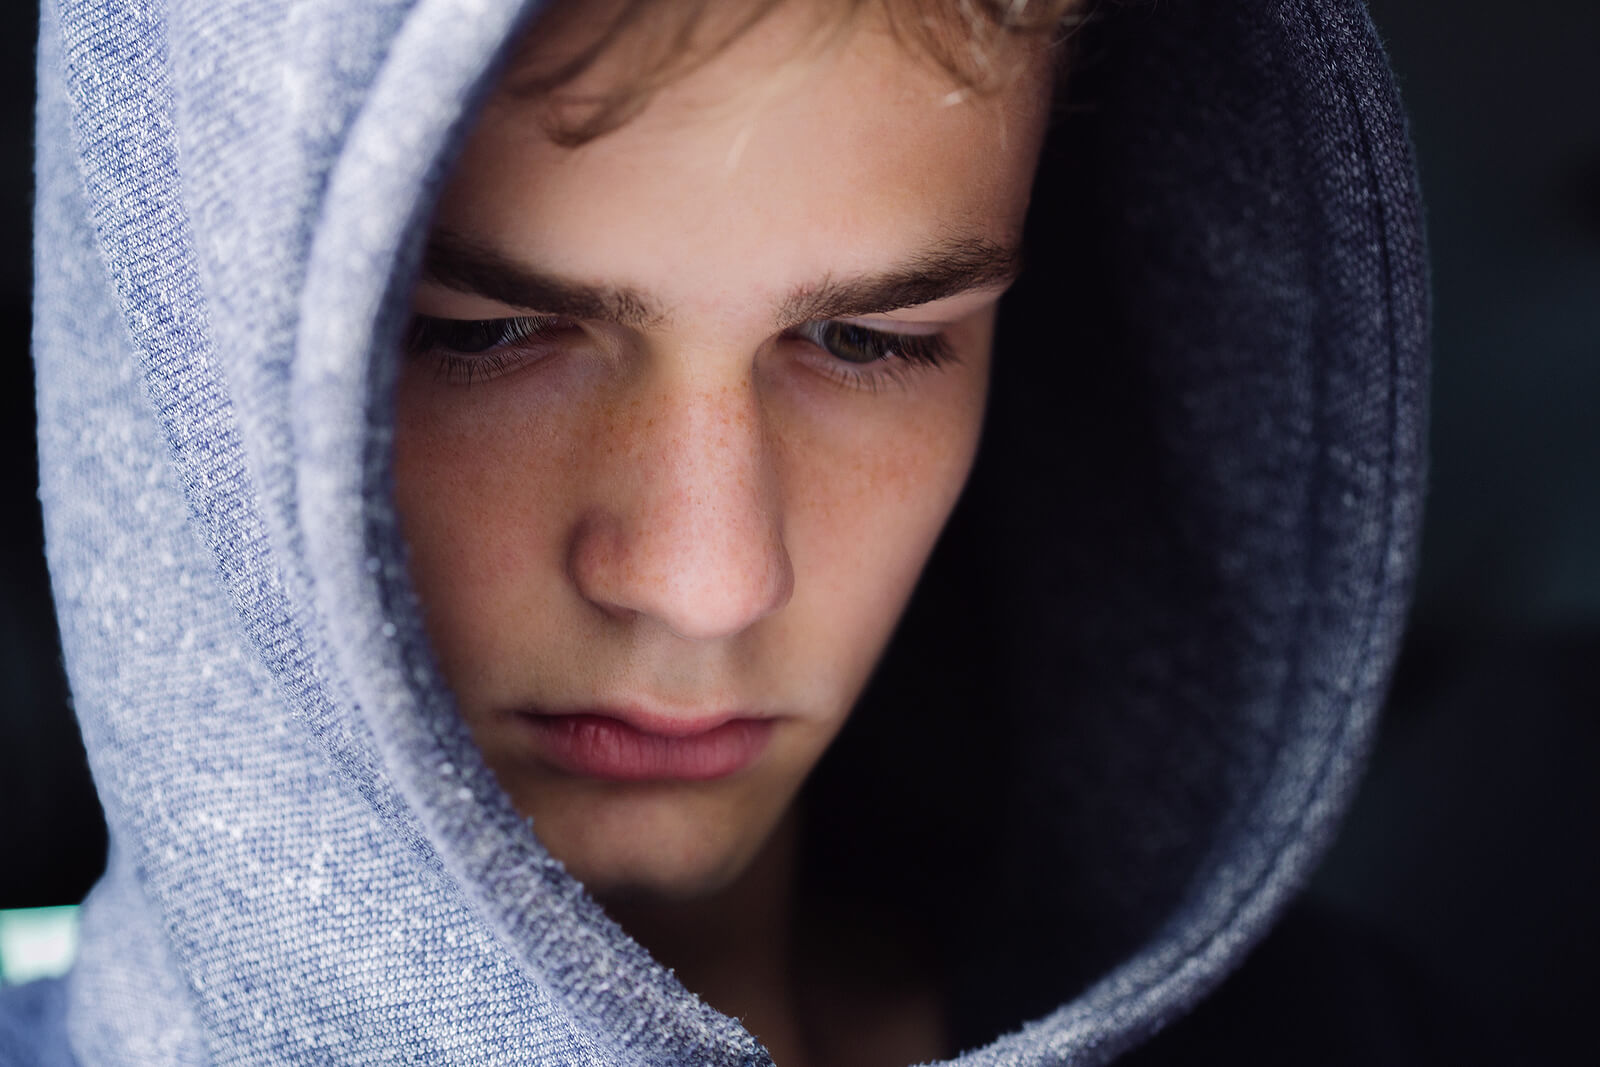 En tonårspojke som bär en luvtröja och ser ledsen ut.